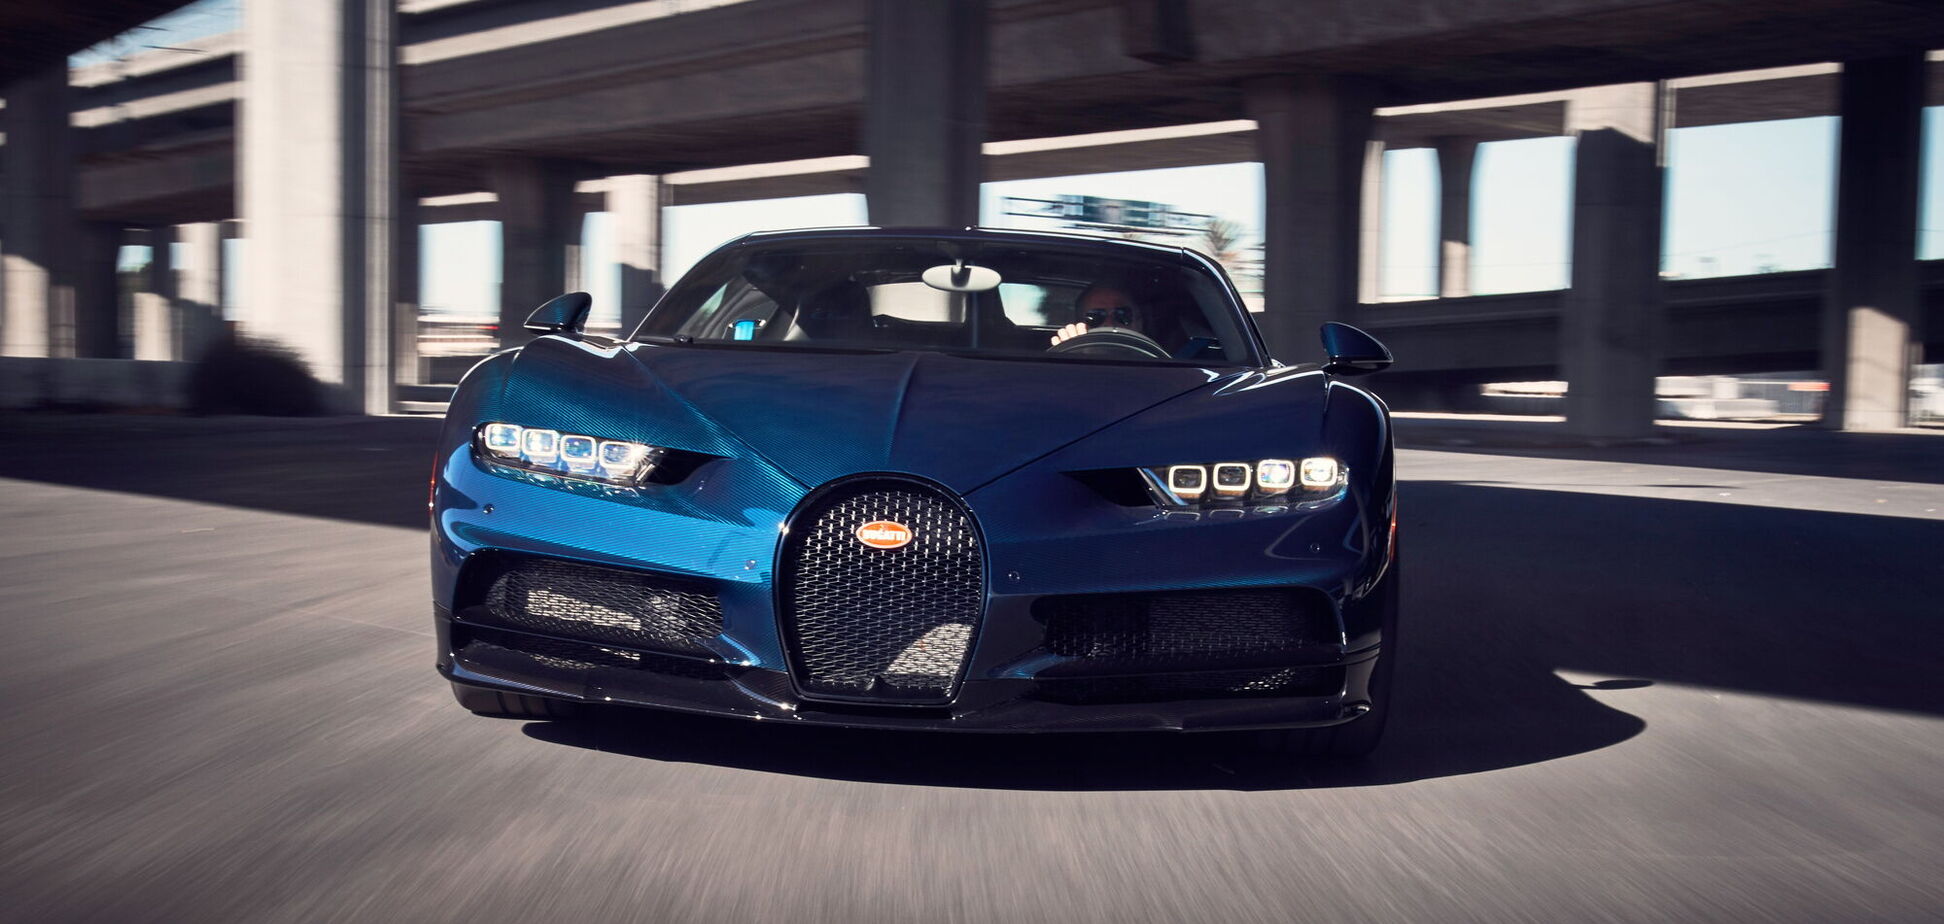 Міністерство транспорту Німеччини розкритикувало власника Bugatti